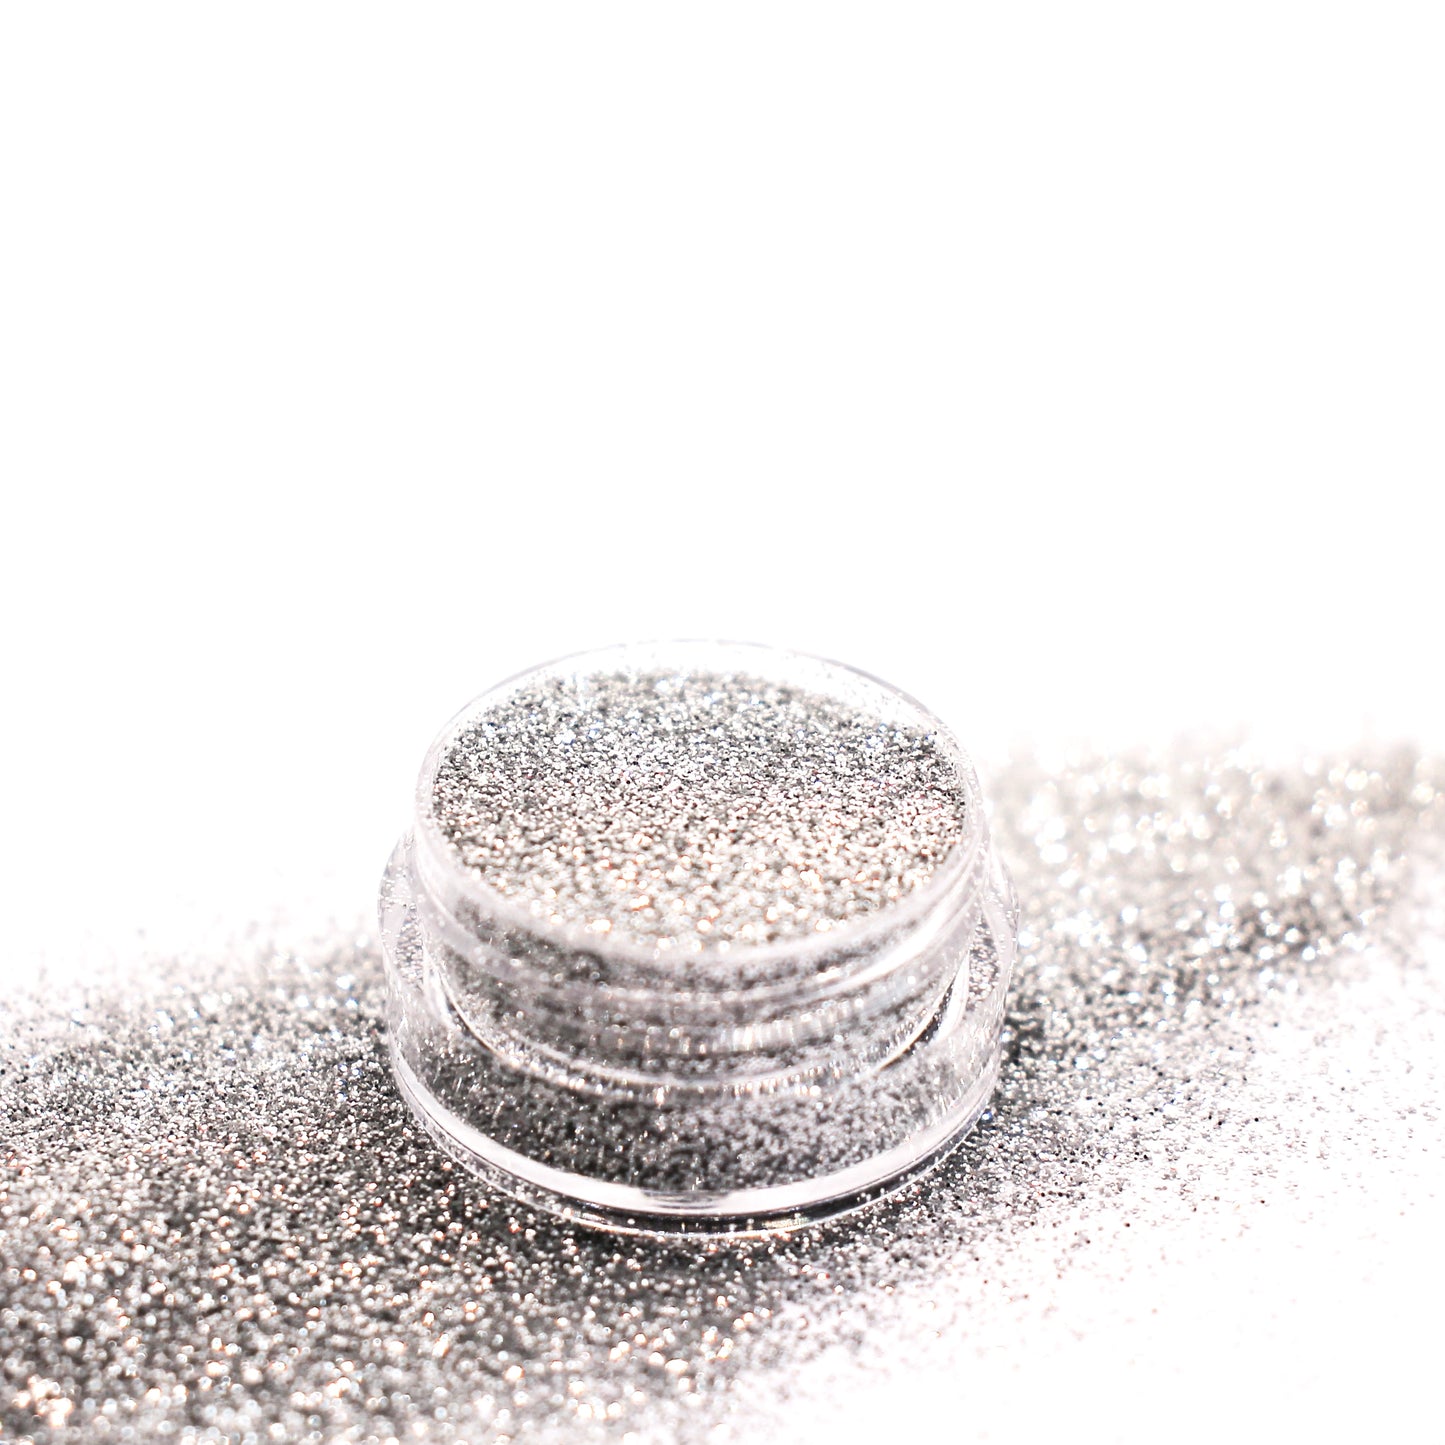 Silver Ultrafine Biodegradable Glitter